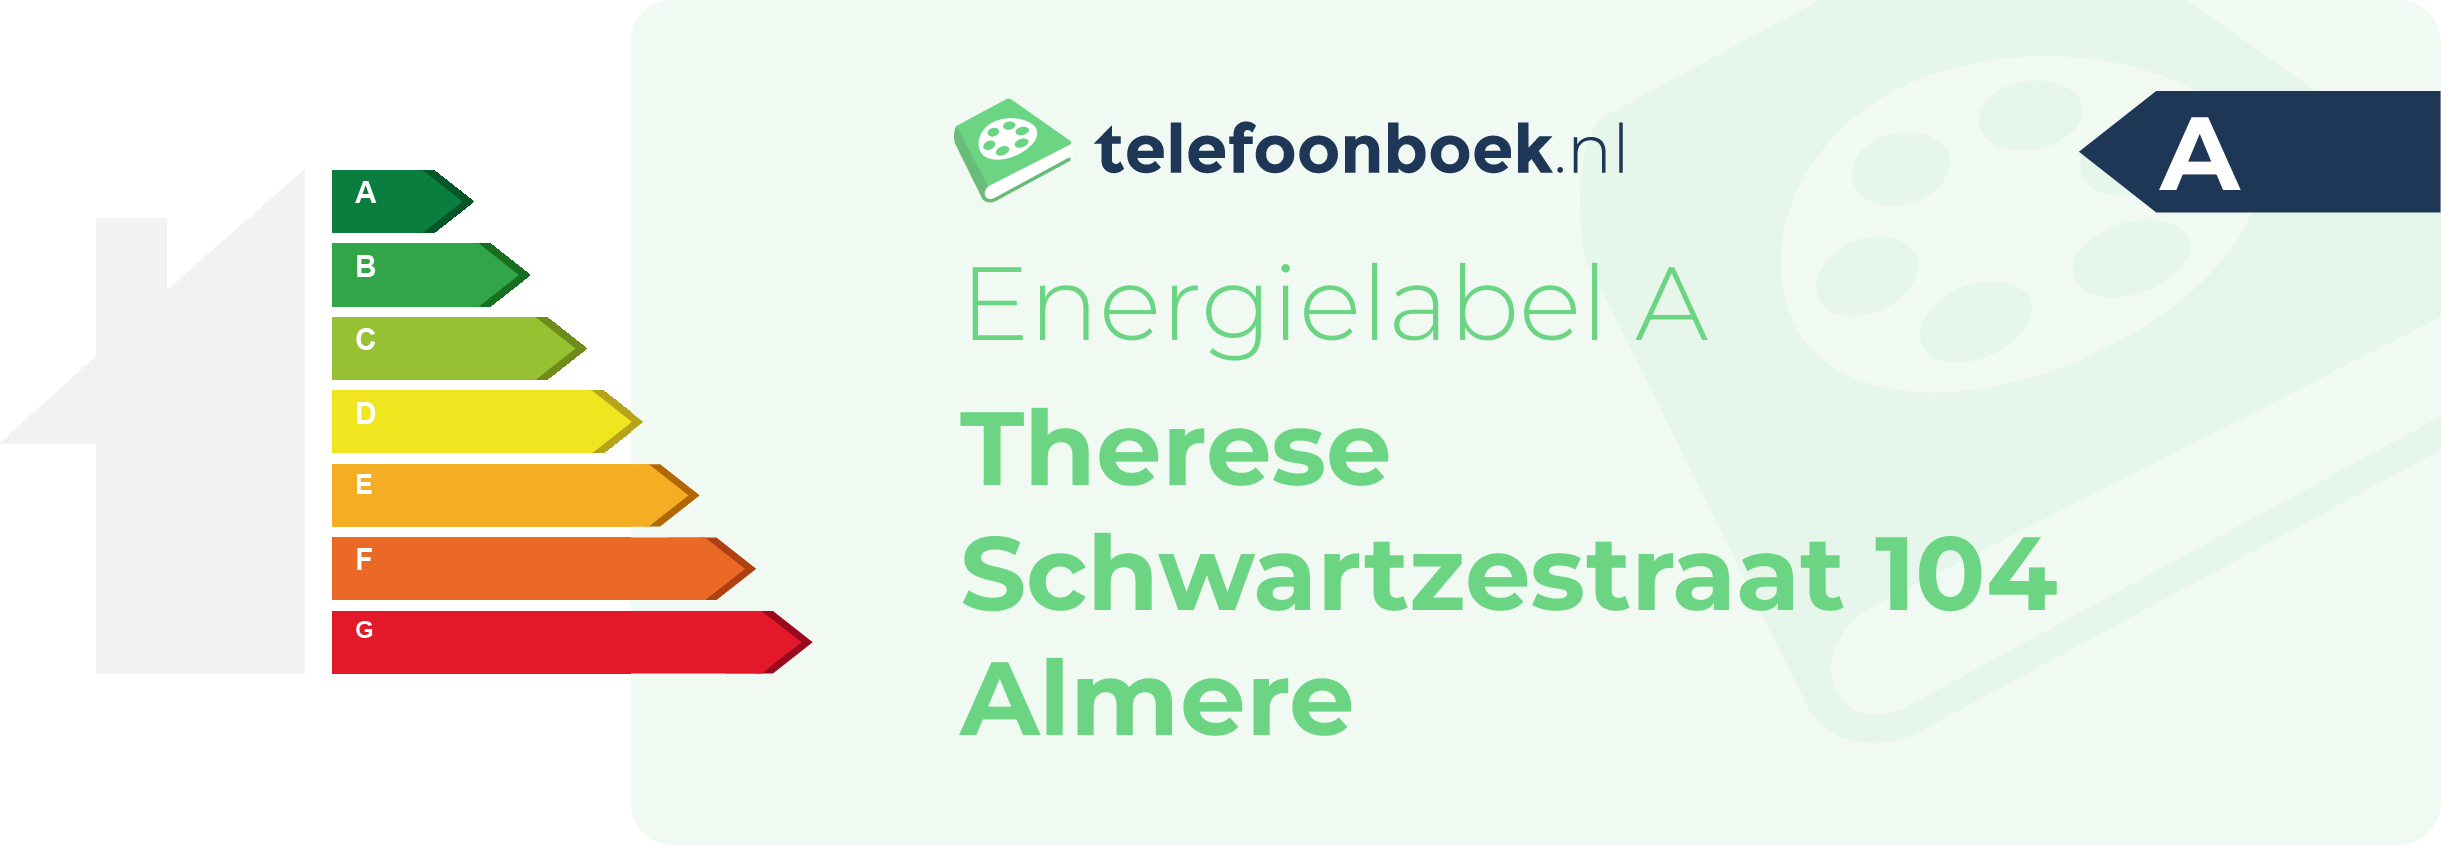 Energielabel Therese Schwartzestraat 104 Almere